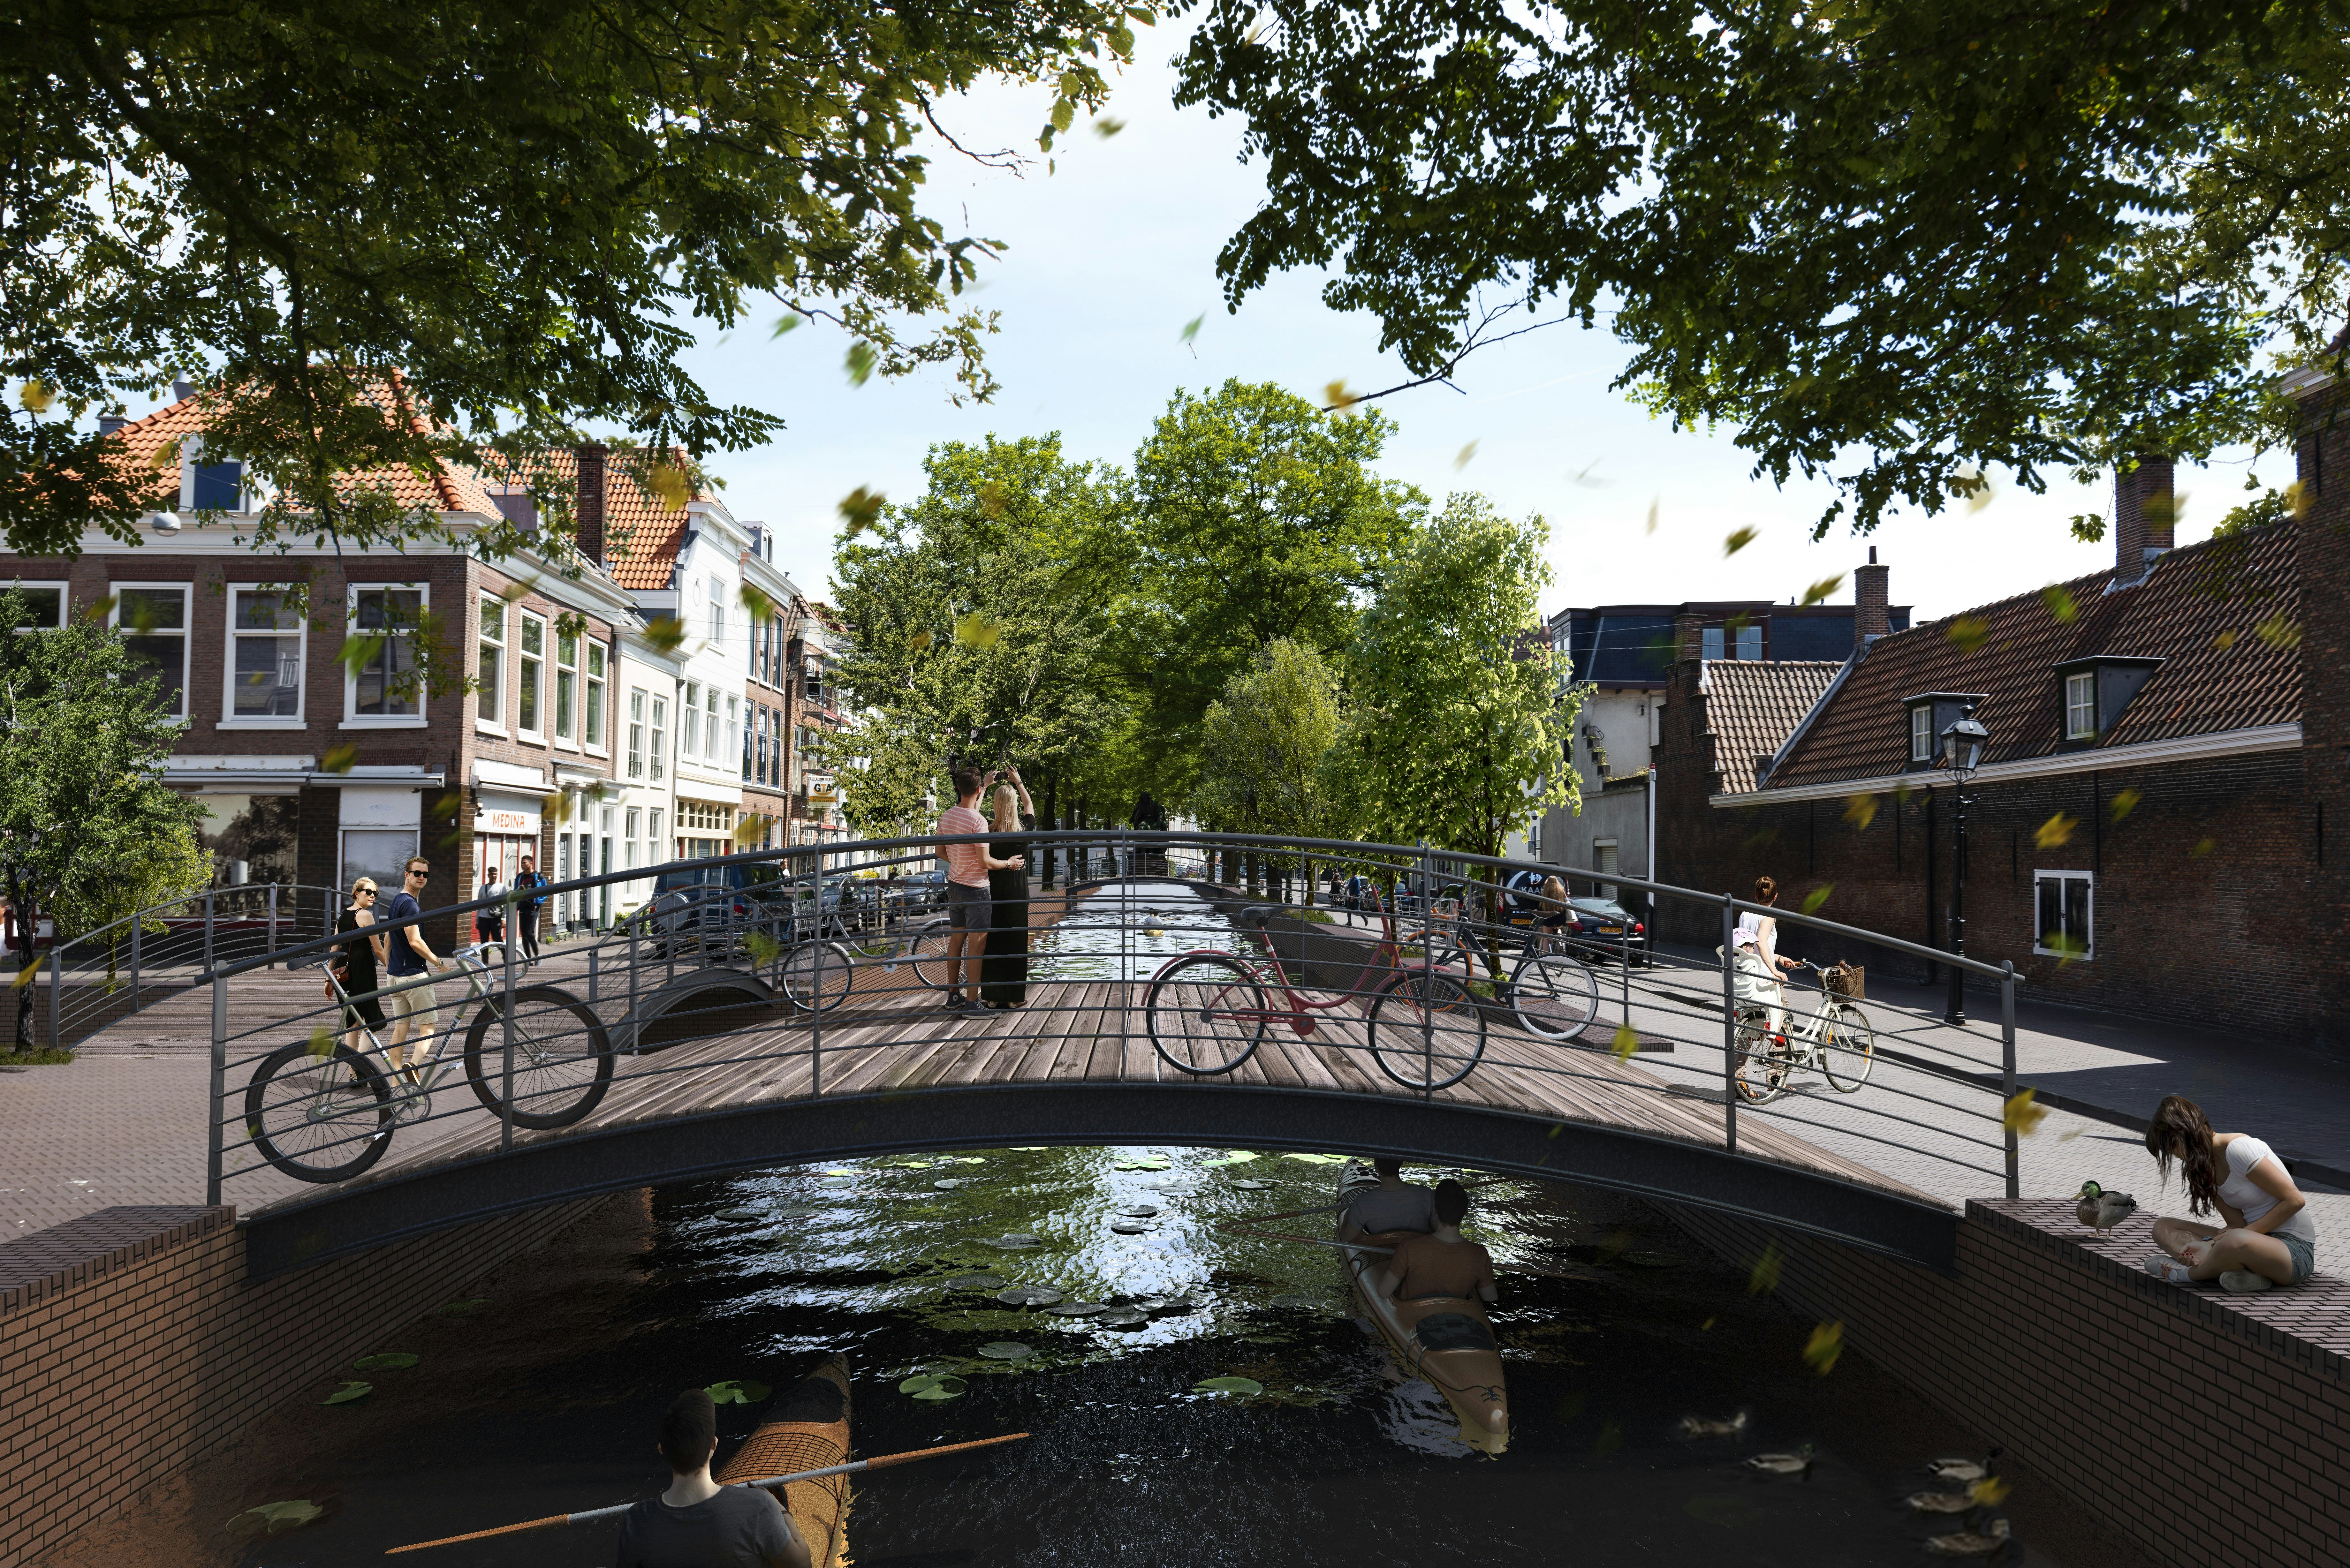 Plan voor de Paviljoensgracht in Den Haag. Beeld MVRDV